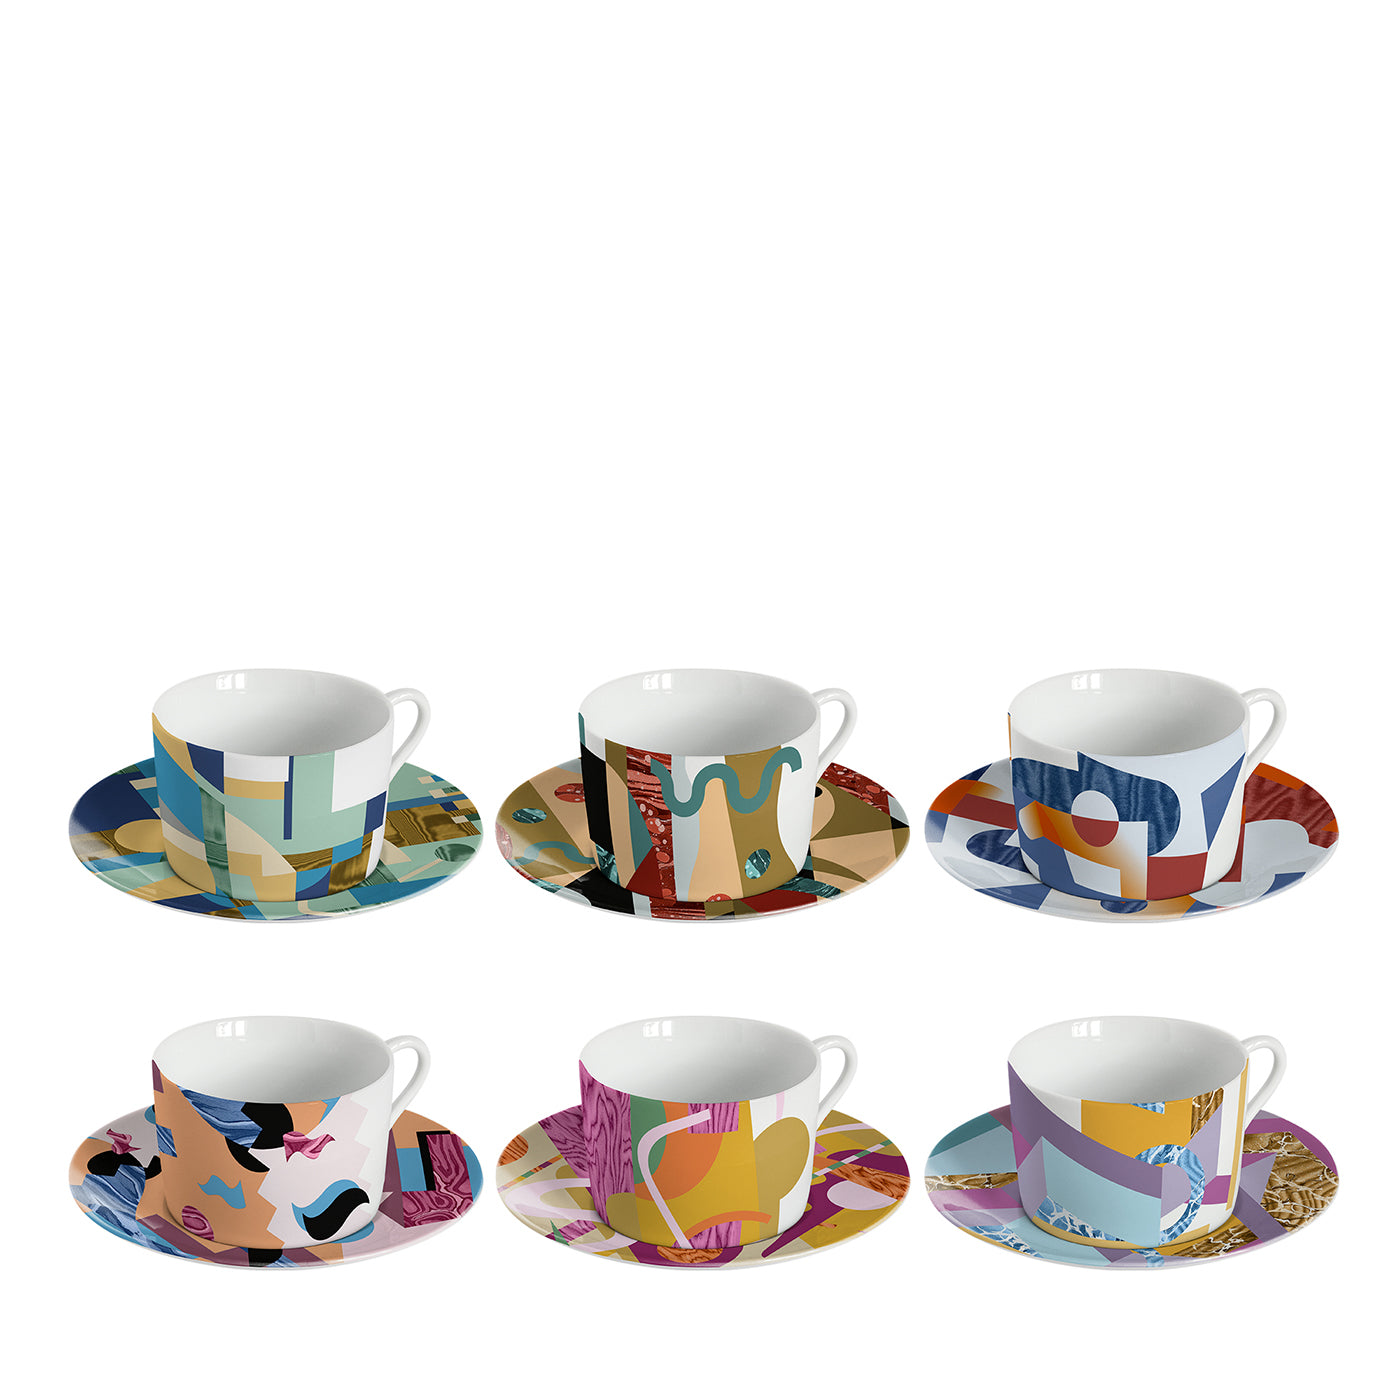 Alchimieset de 6 tasses à thé en porcelaine avec décor abstrait - Vue principale